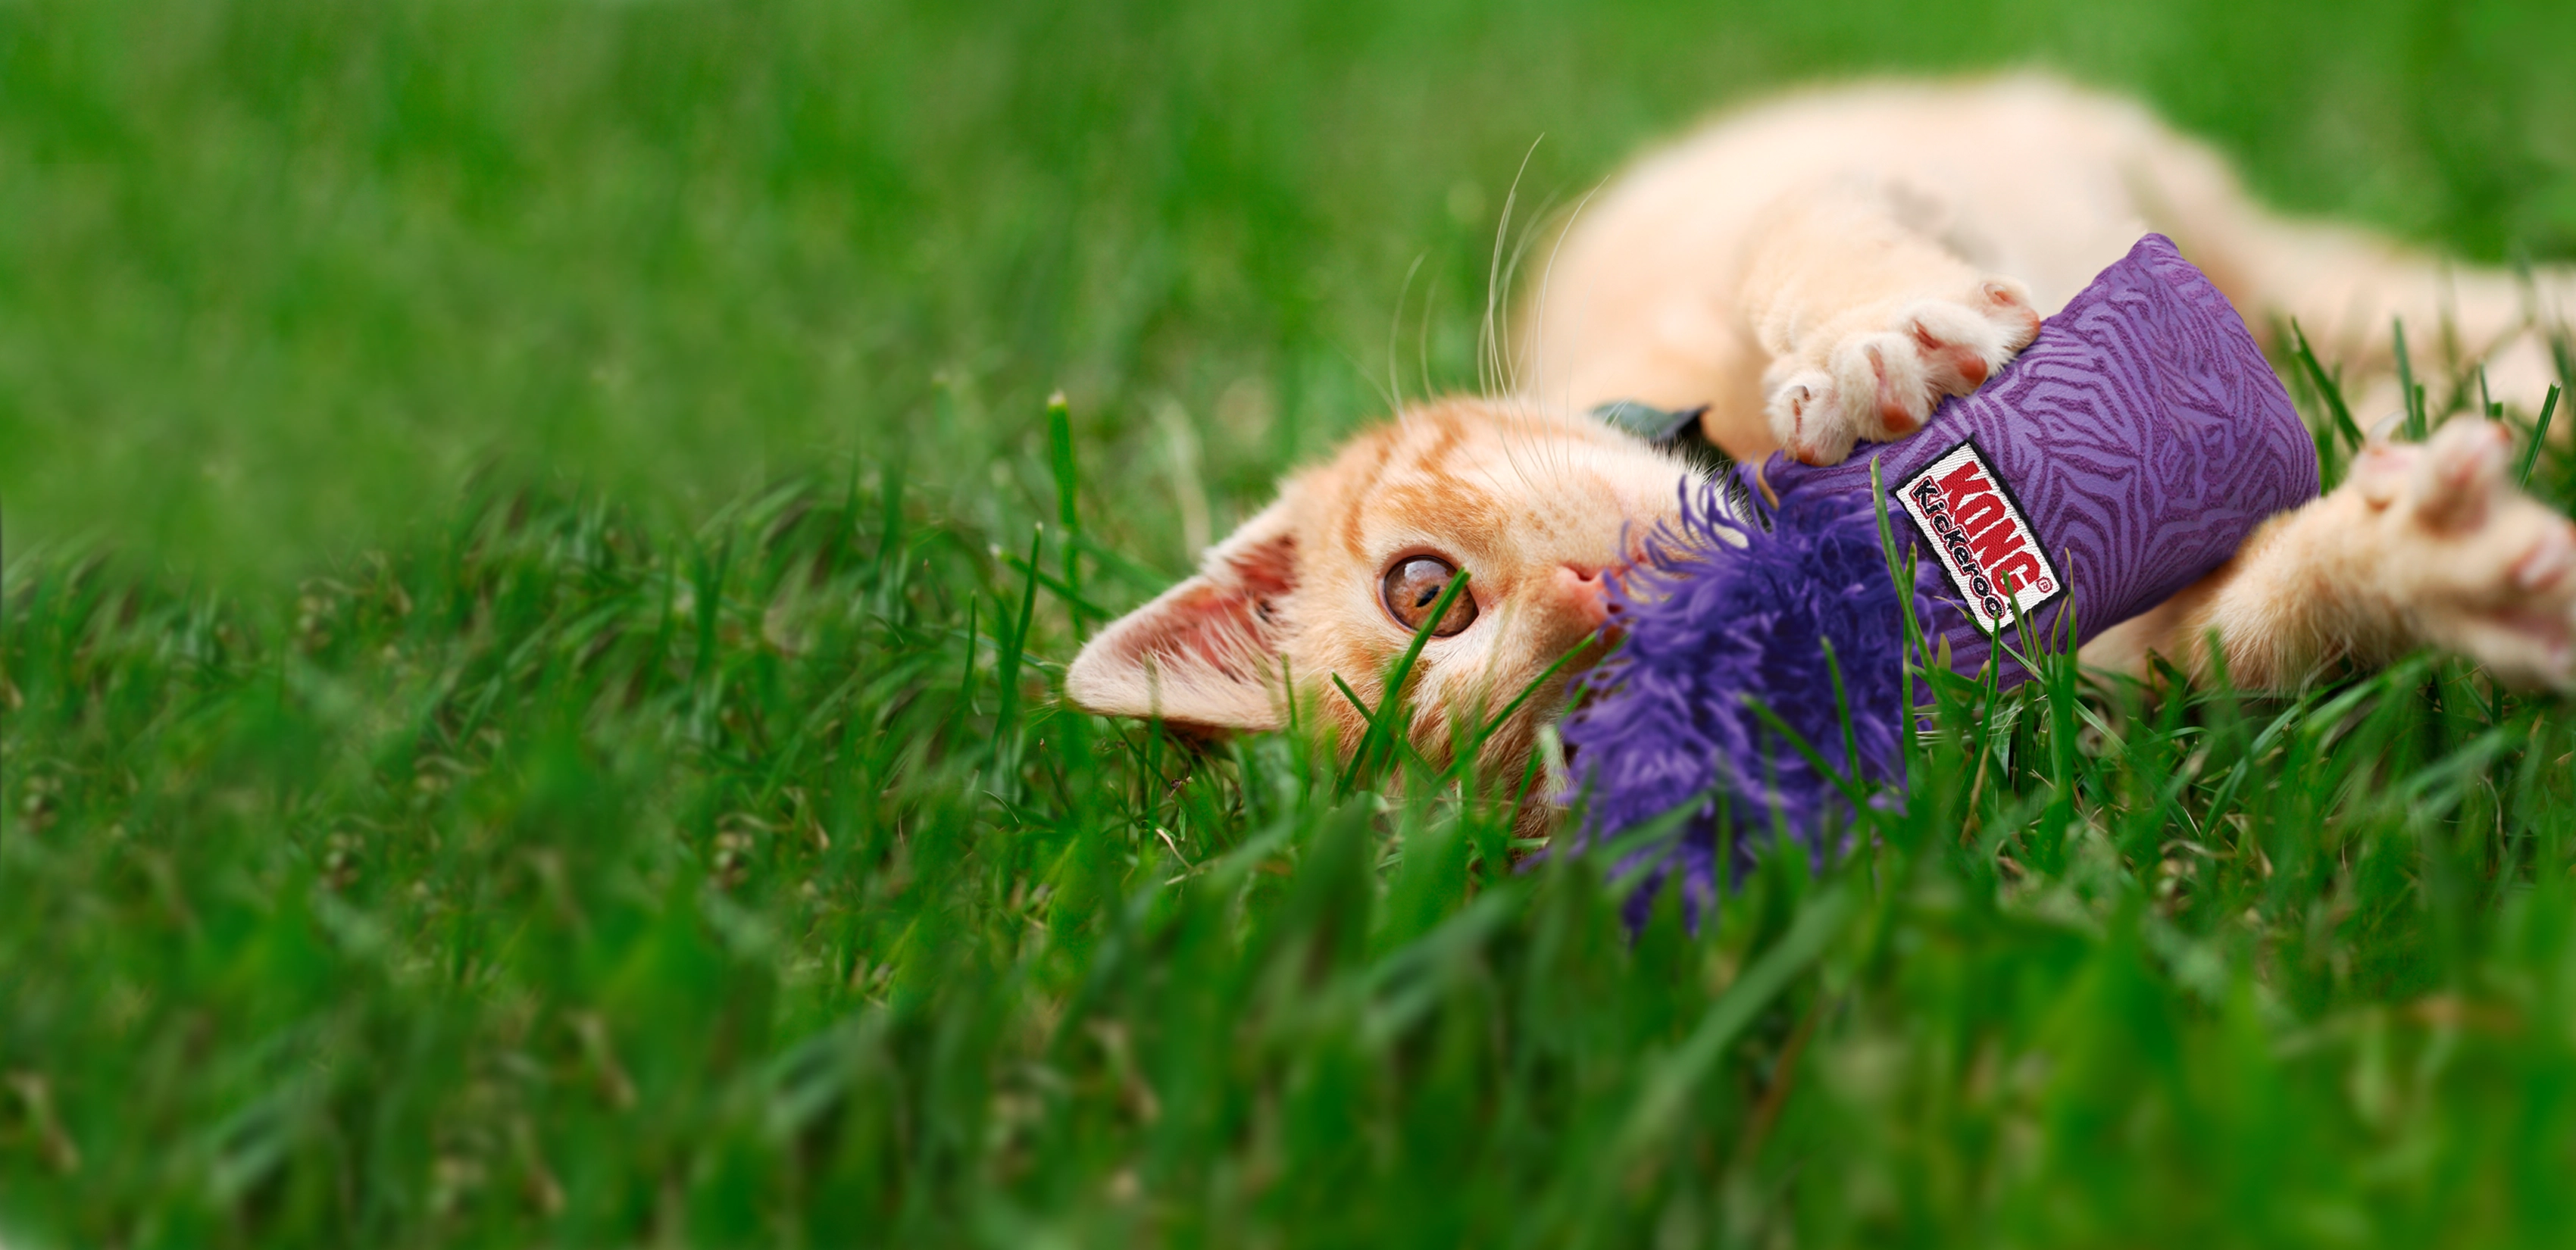 Gatto che gioca con un KONG kickeroo nell'erba.